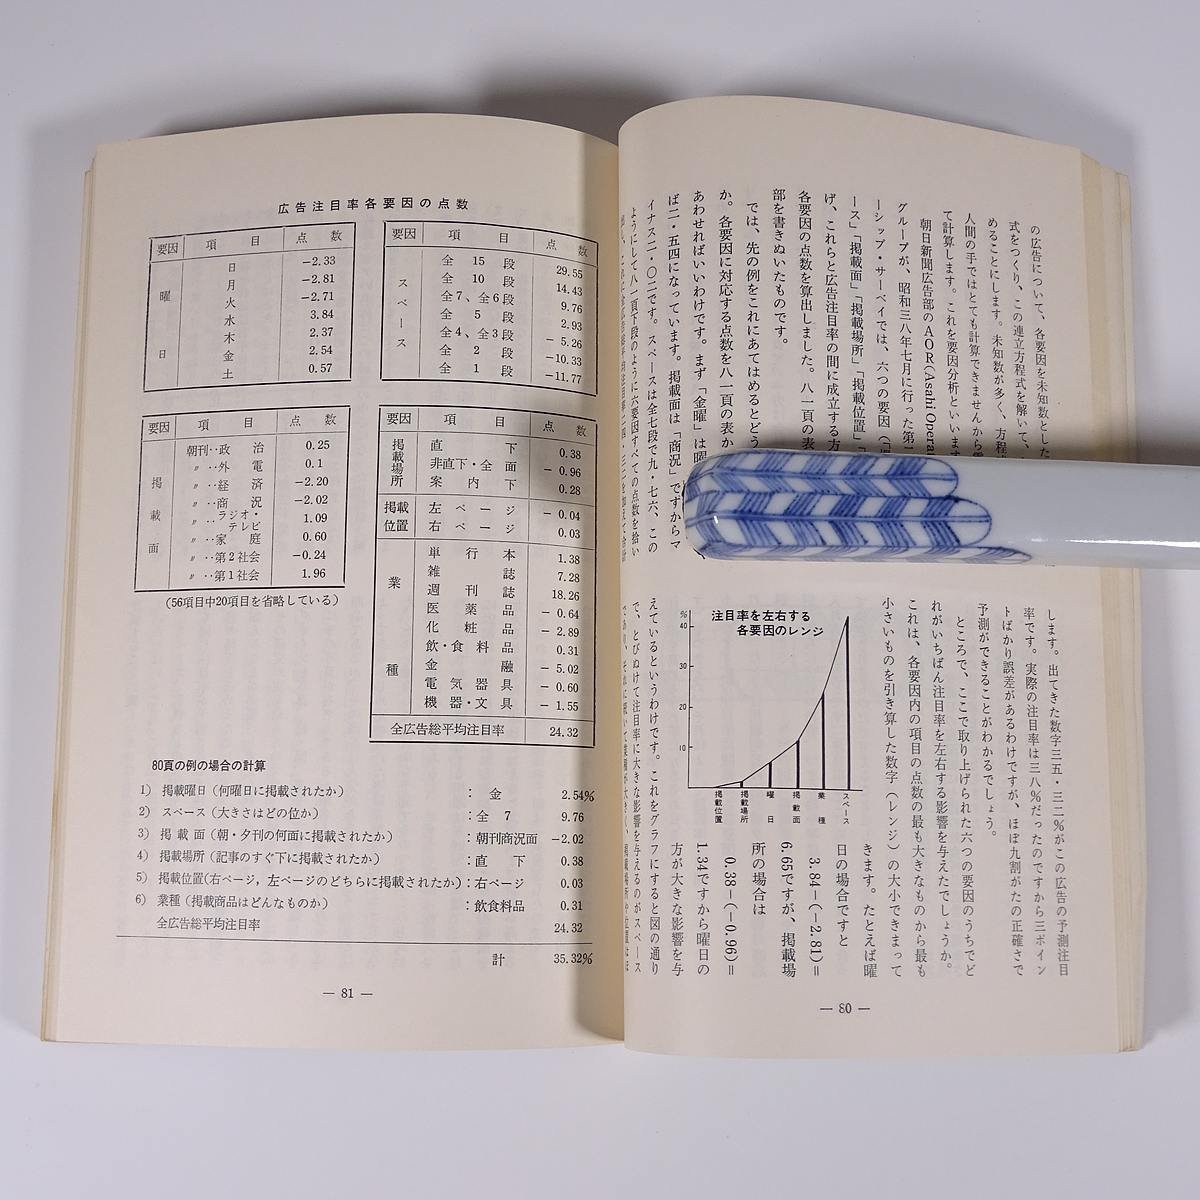 新聞広告のはなし 朝日新聞社 1973 単行本 経済 マスコミ コマーシャル_画像8